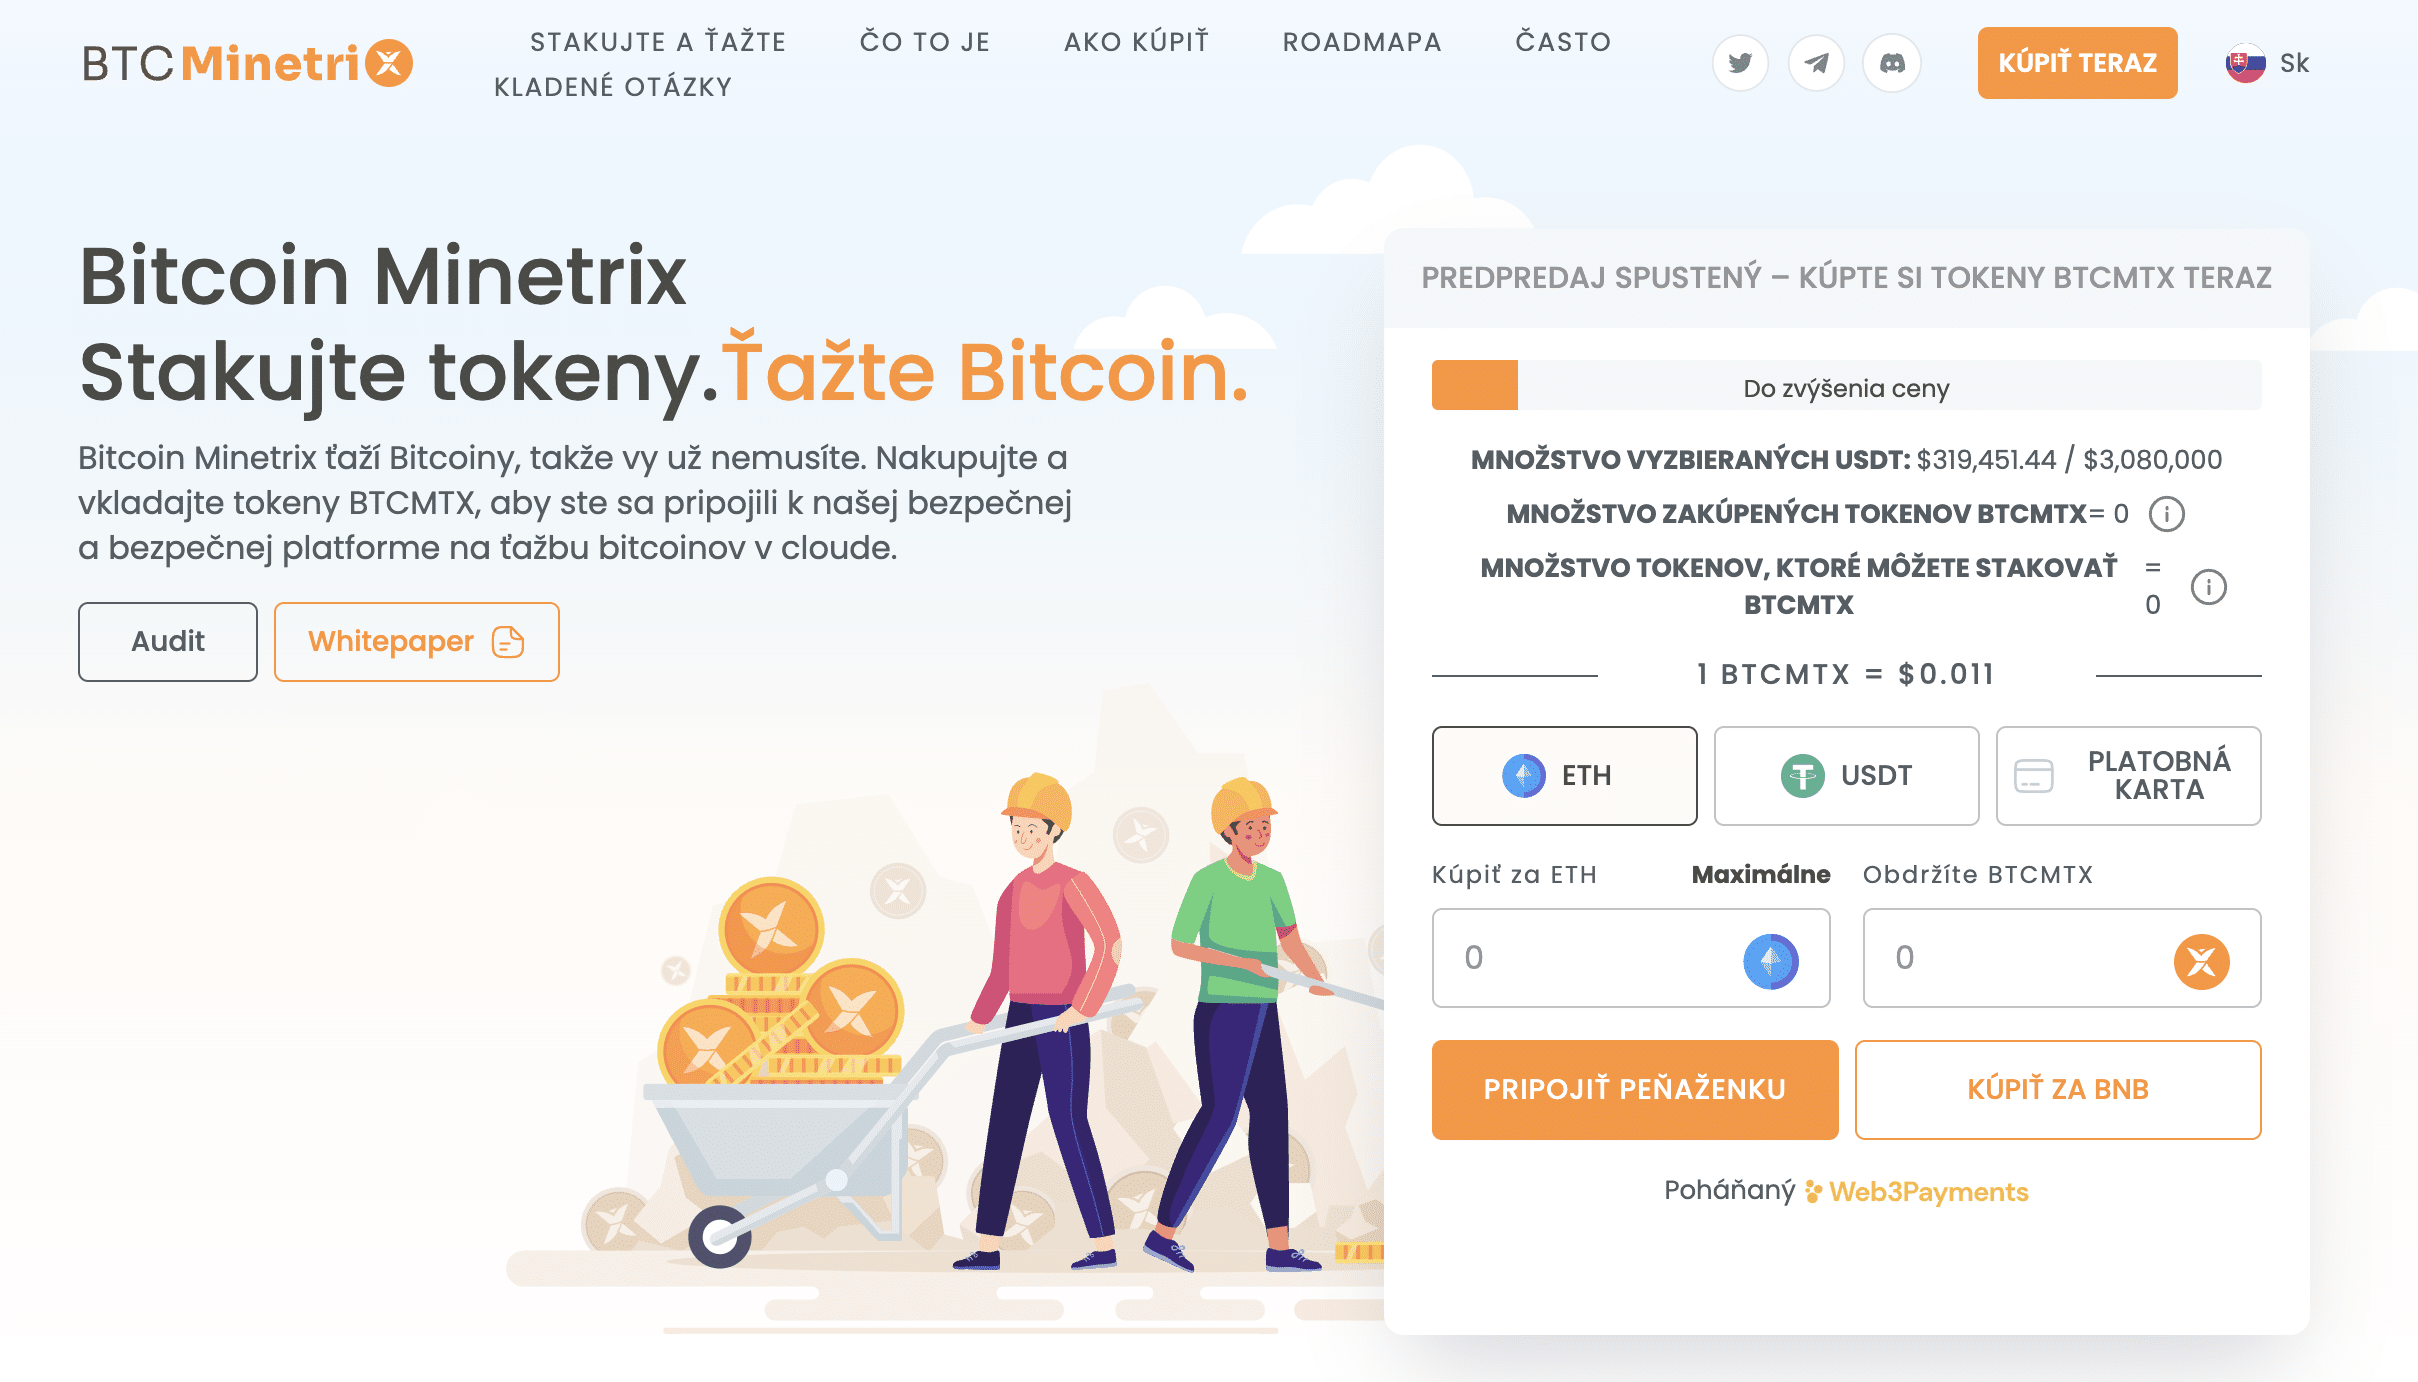 Predpredaj Bitcoin Minetrix